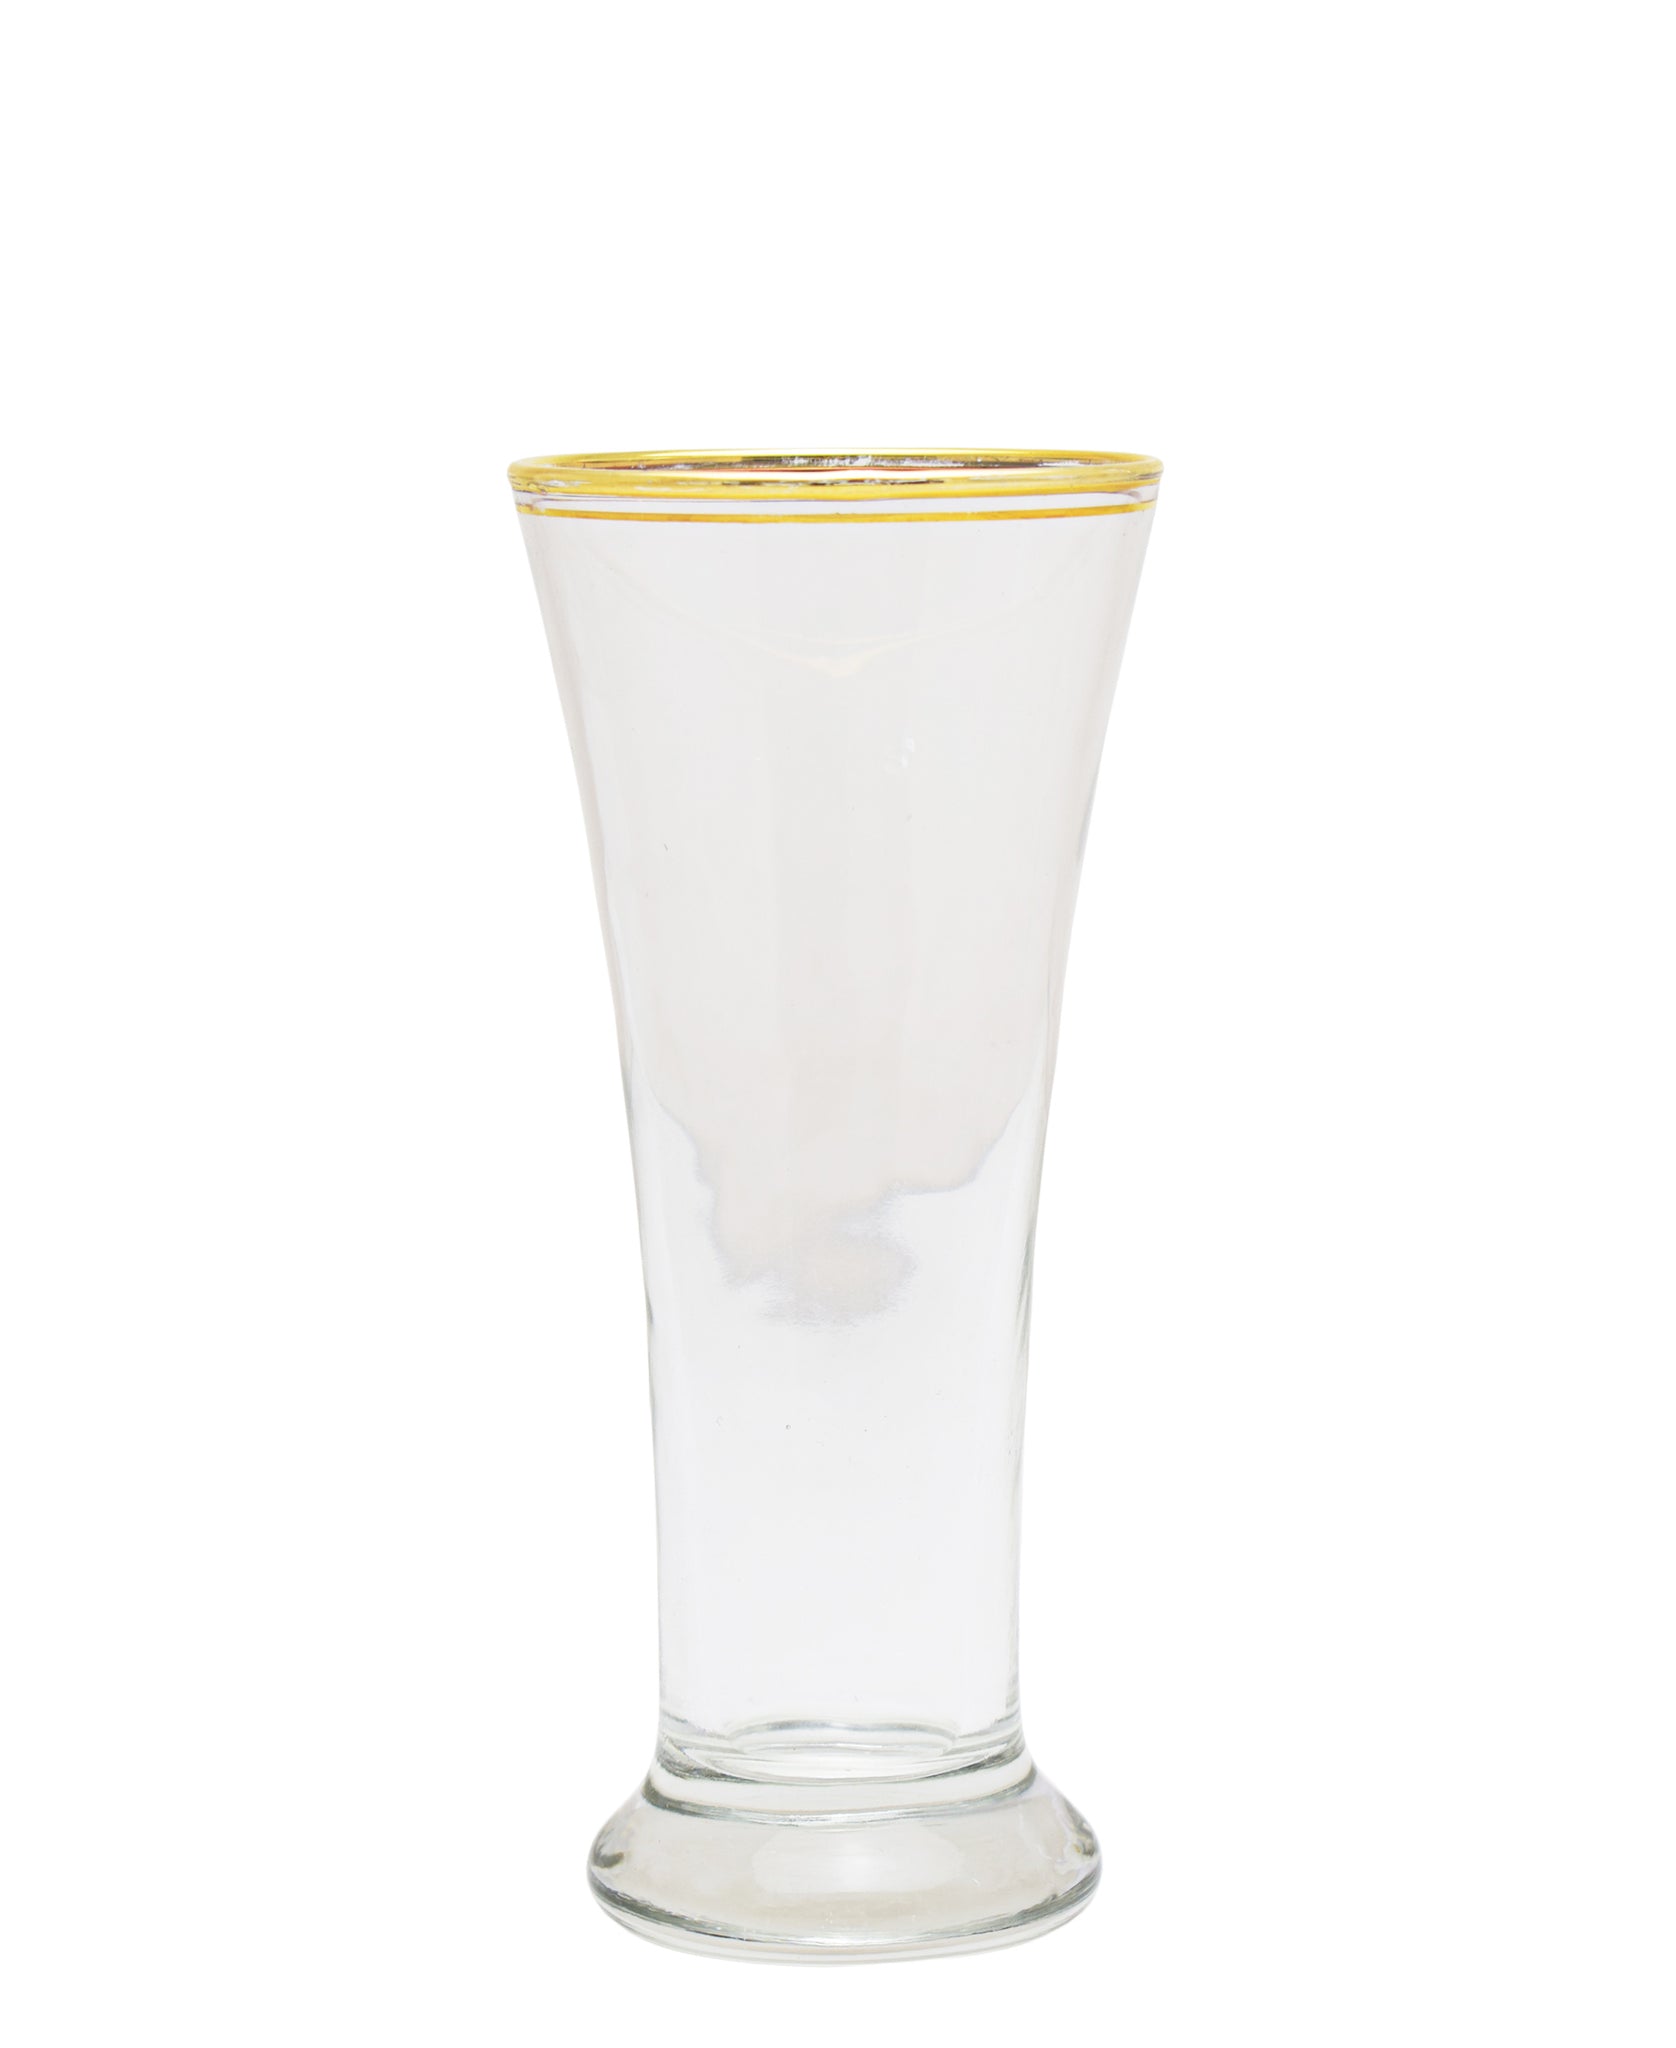 Glacier Milkshake 6 Piece Glass - Clear & Gold